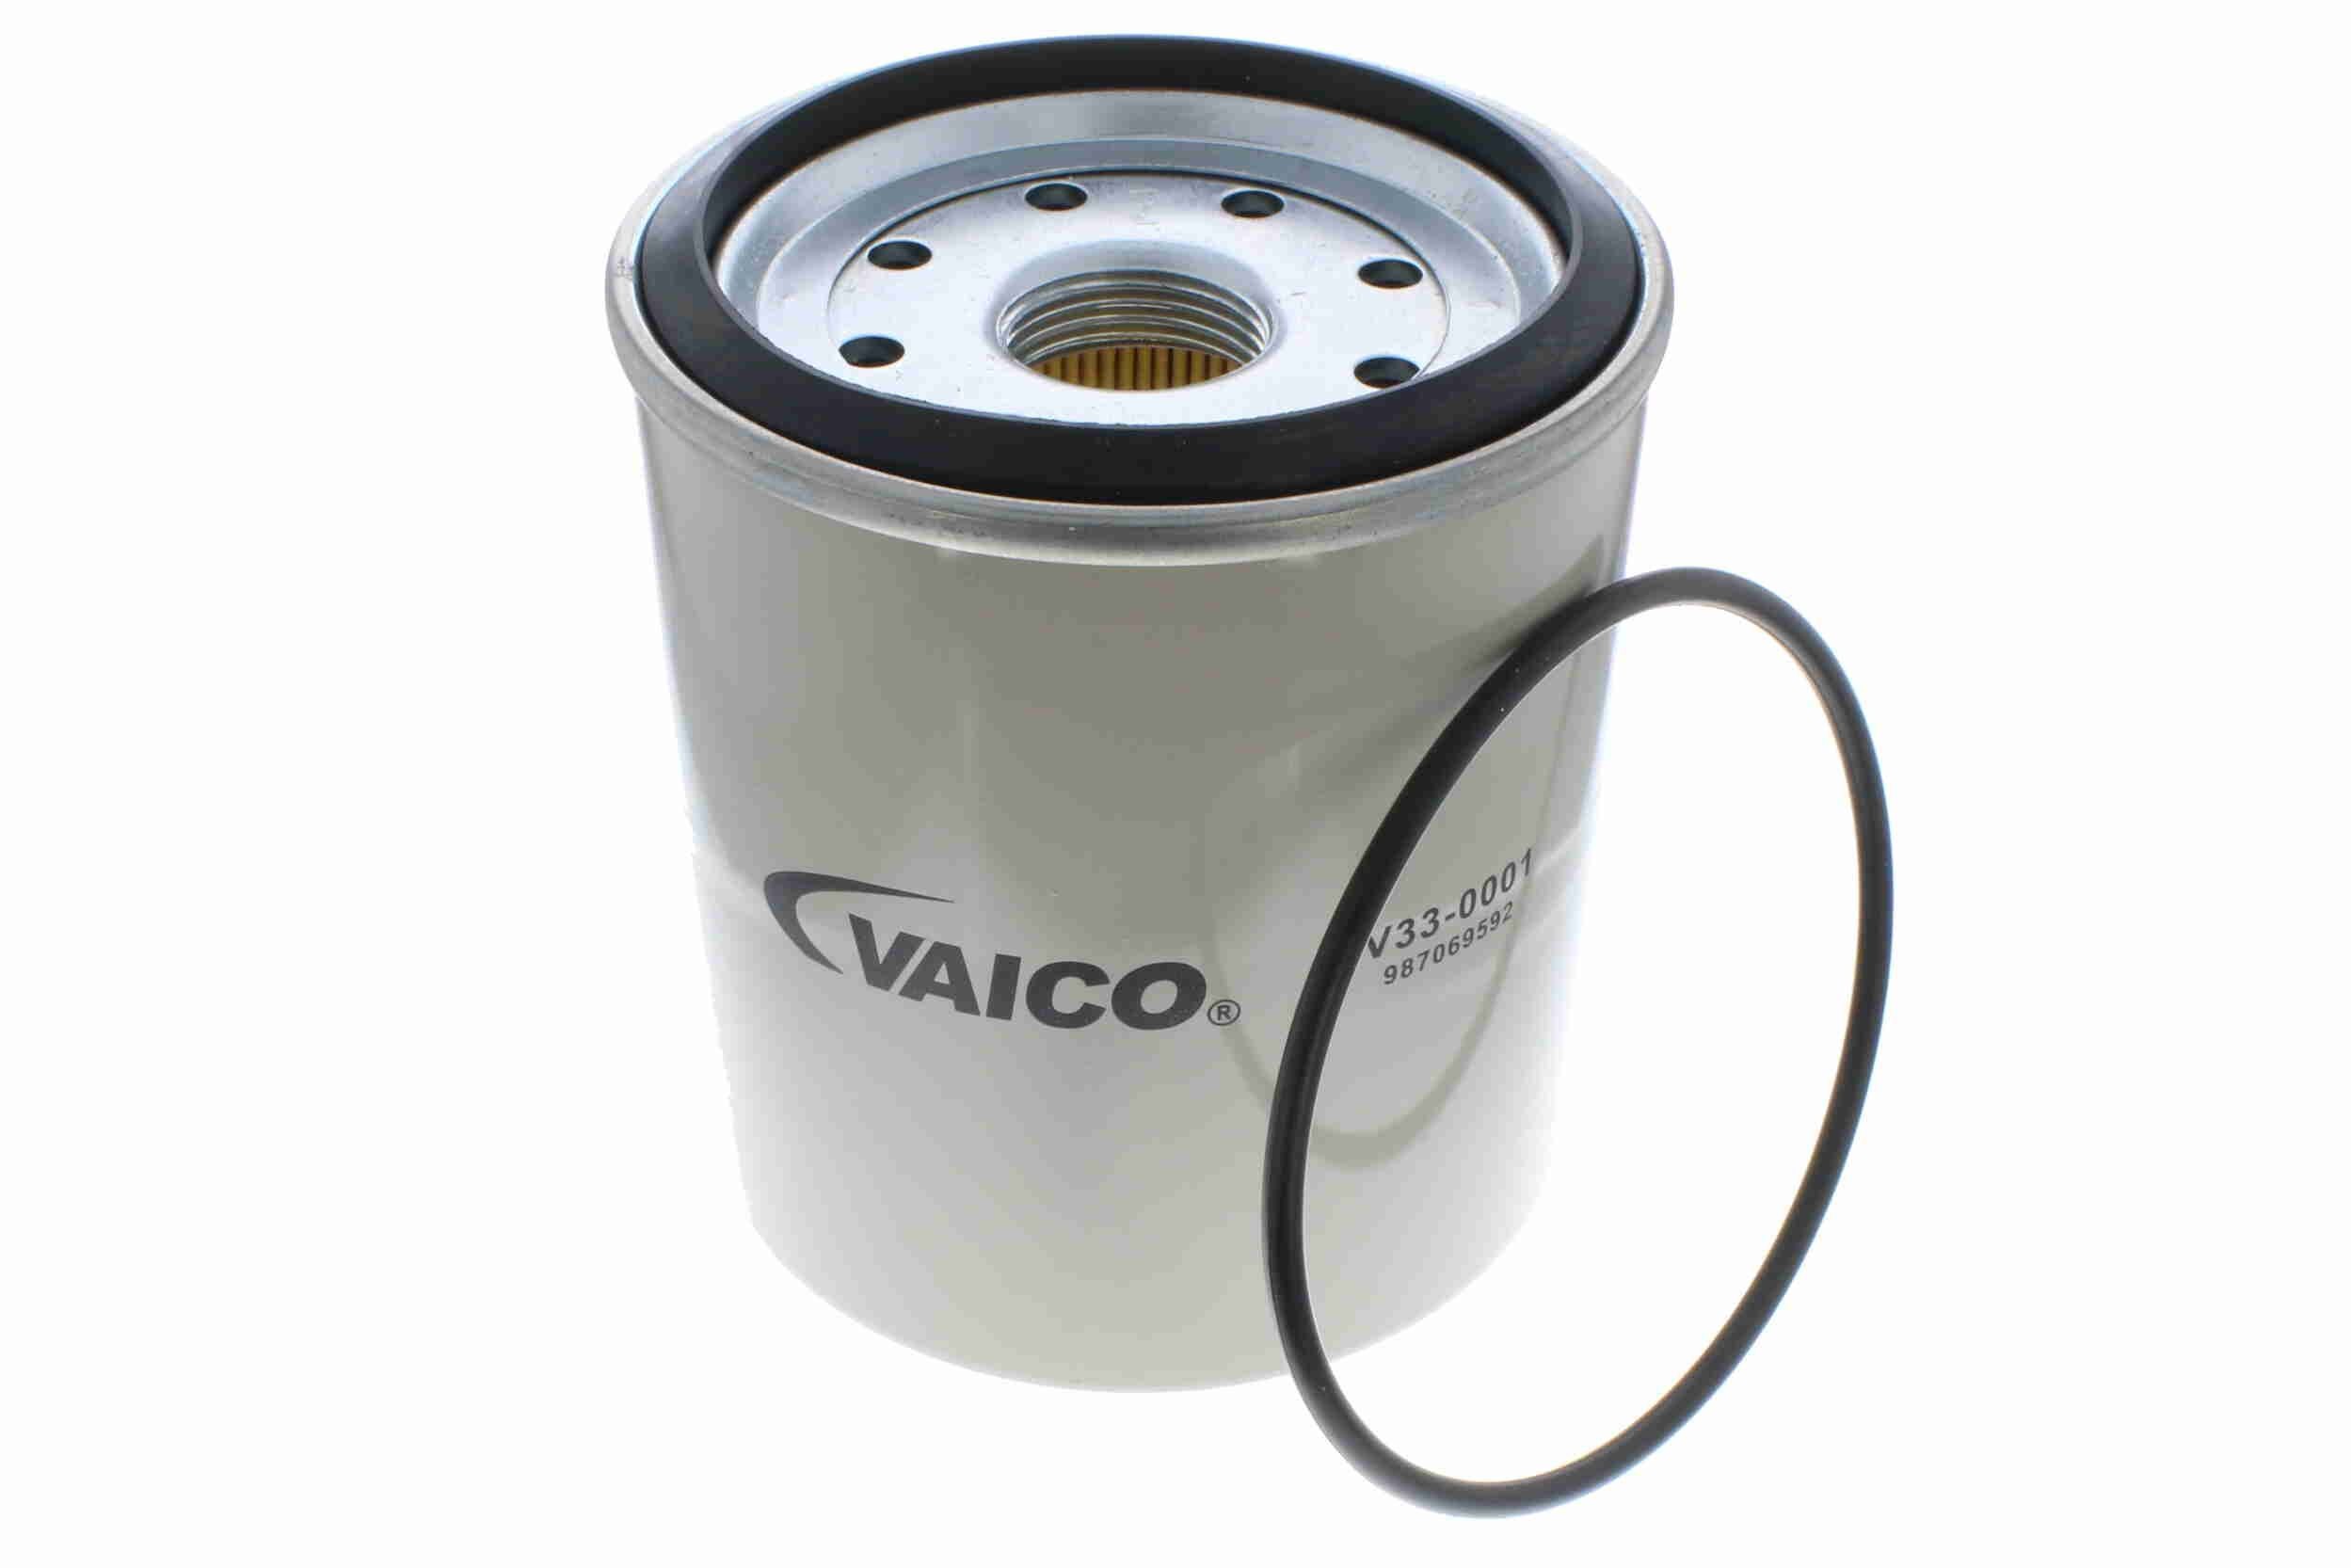 VAICO V33-0001 Fuel filter Spin-on Filter, Original VAICO Quality